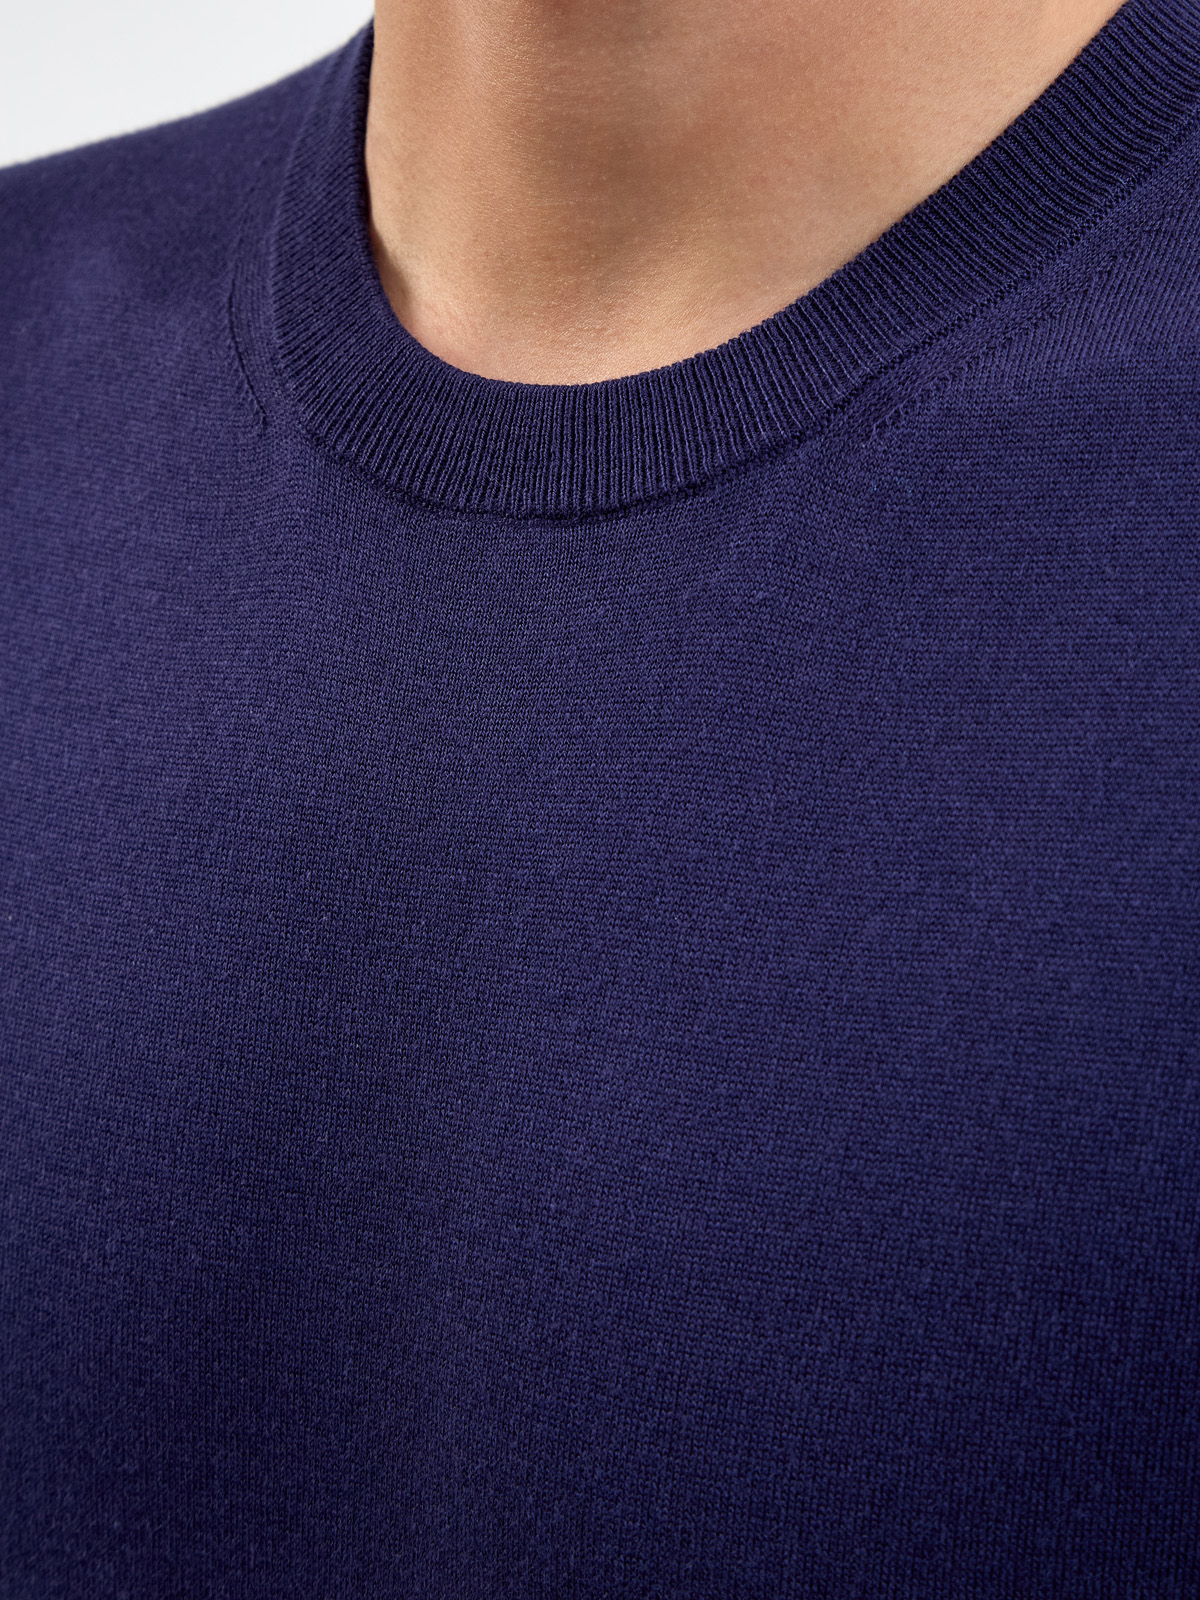 Однотонный джемпер из хлопка и модала с короткими рукавами CANALI, цвет синий, размер 48;50;52;54;56;58;60;62 - фото 5